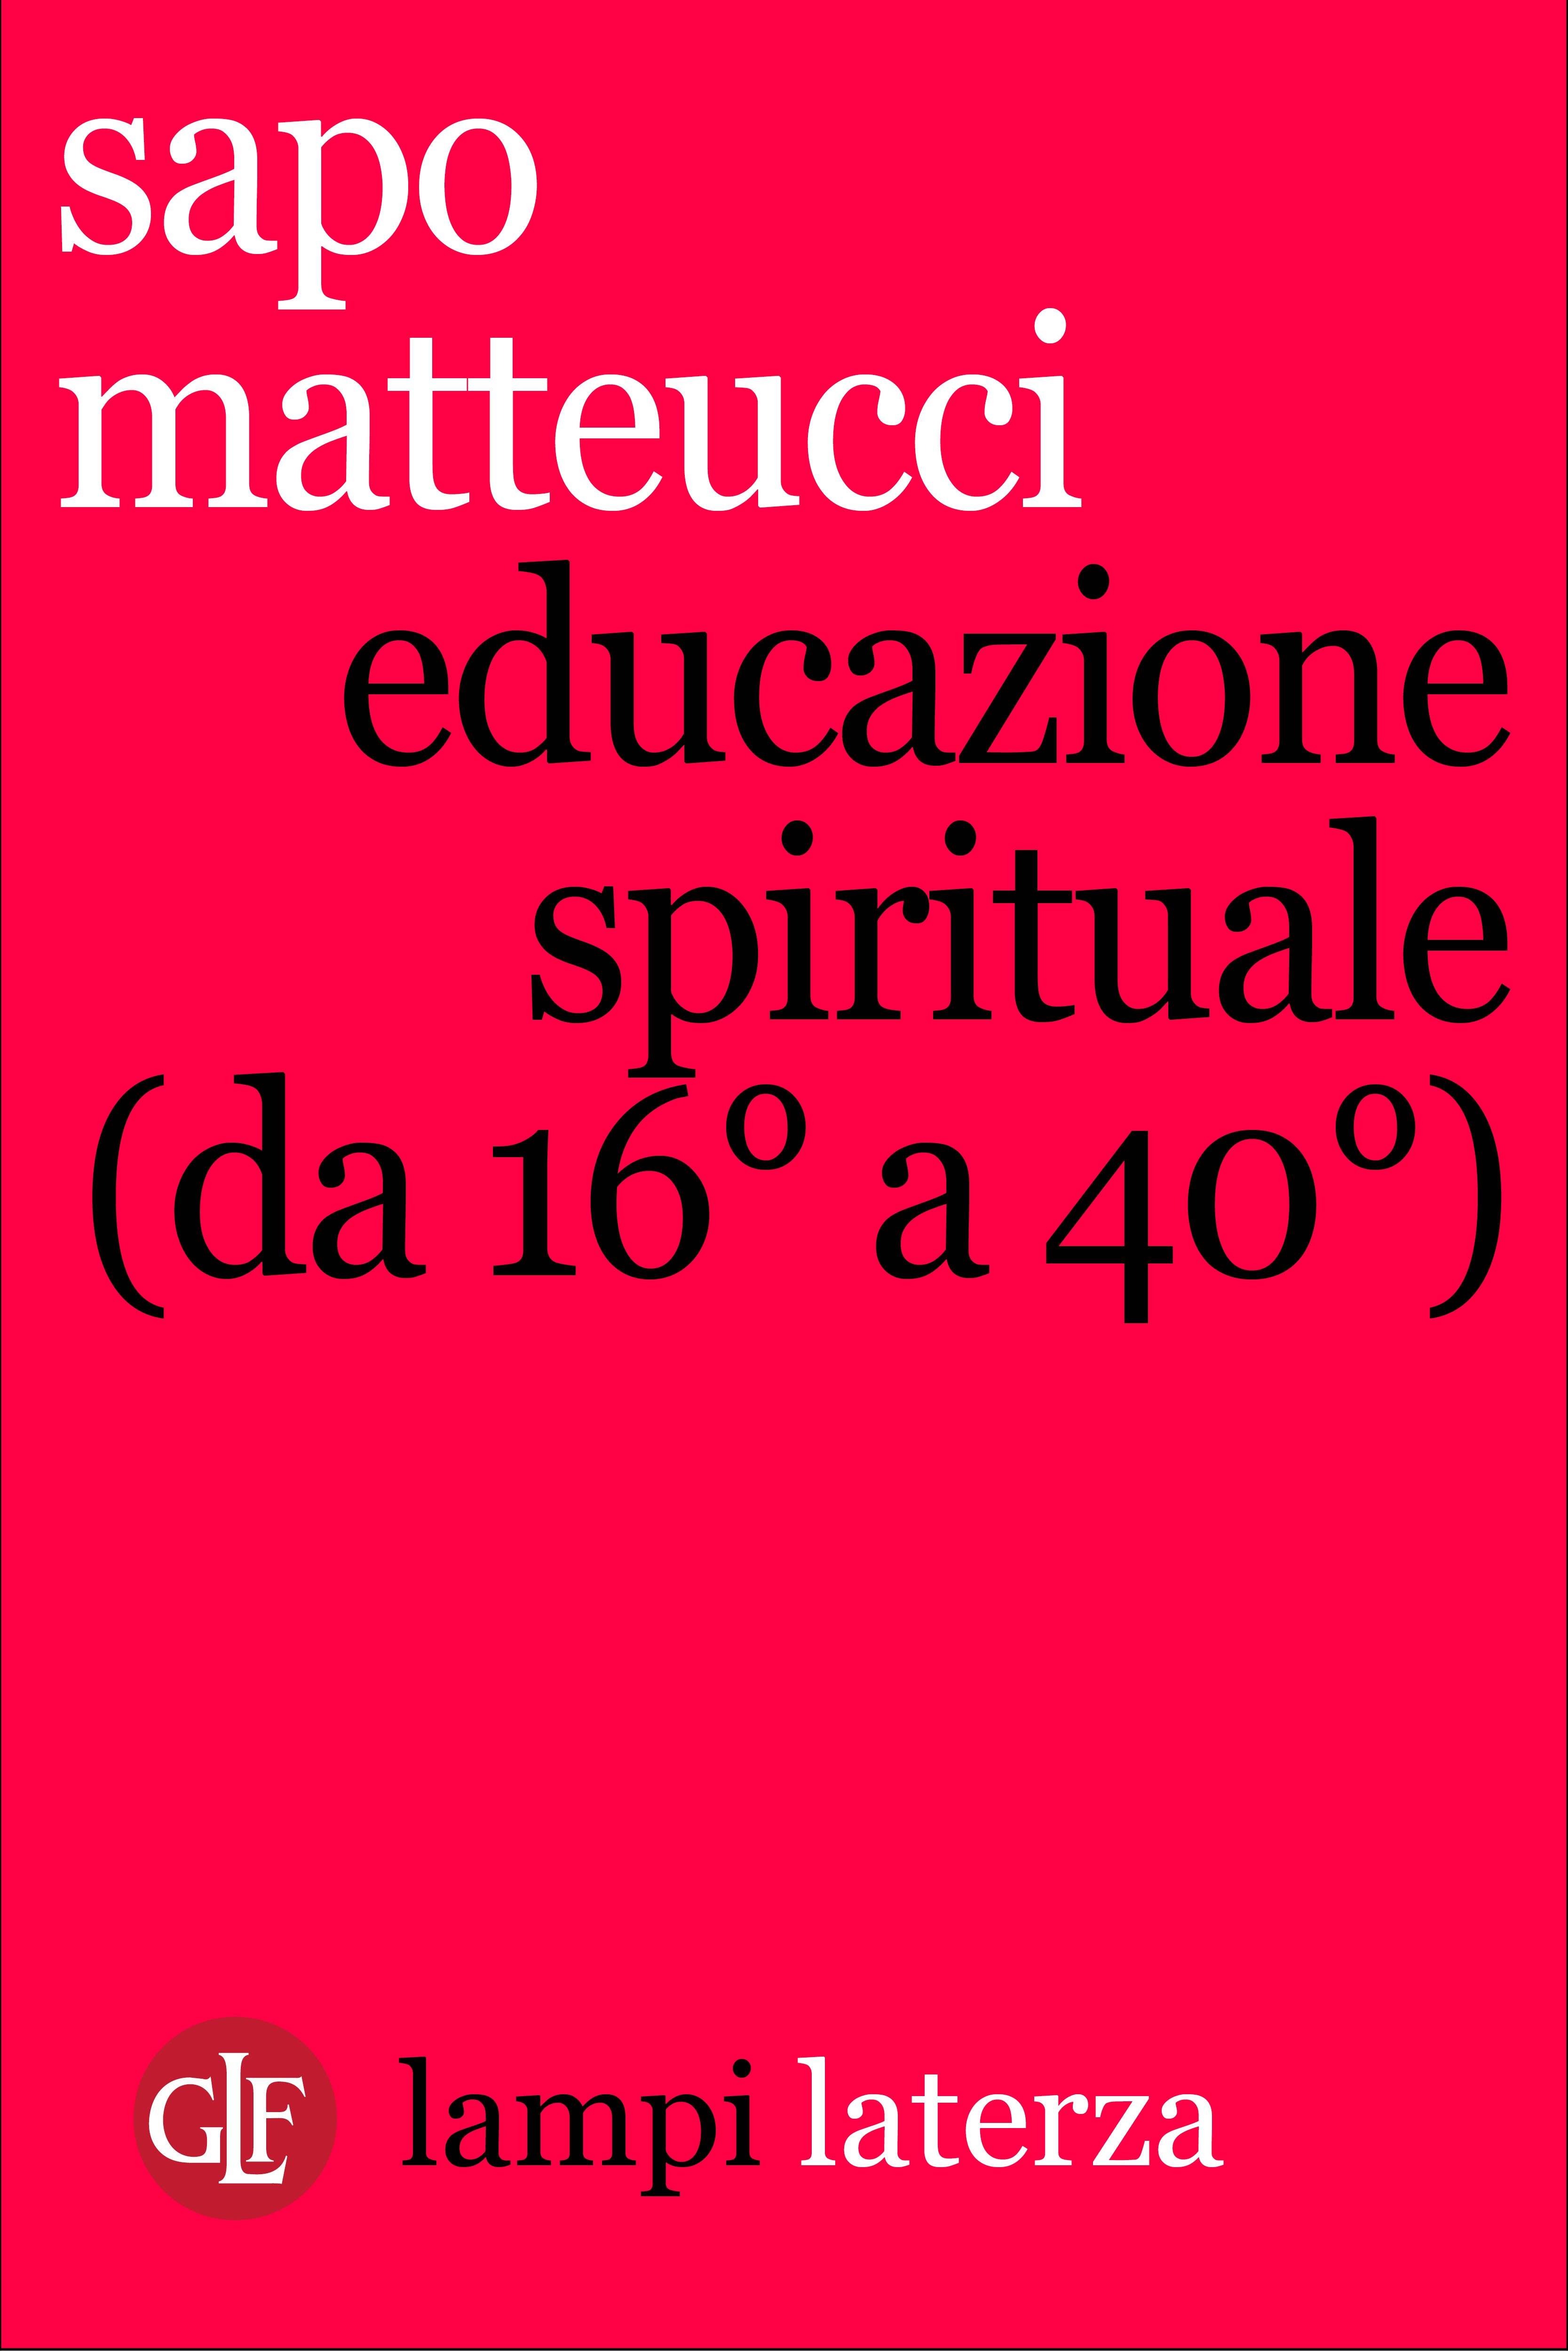 Educazione spirituale (da 16° a 40°) - Librerie.coop